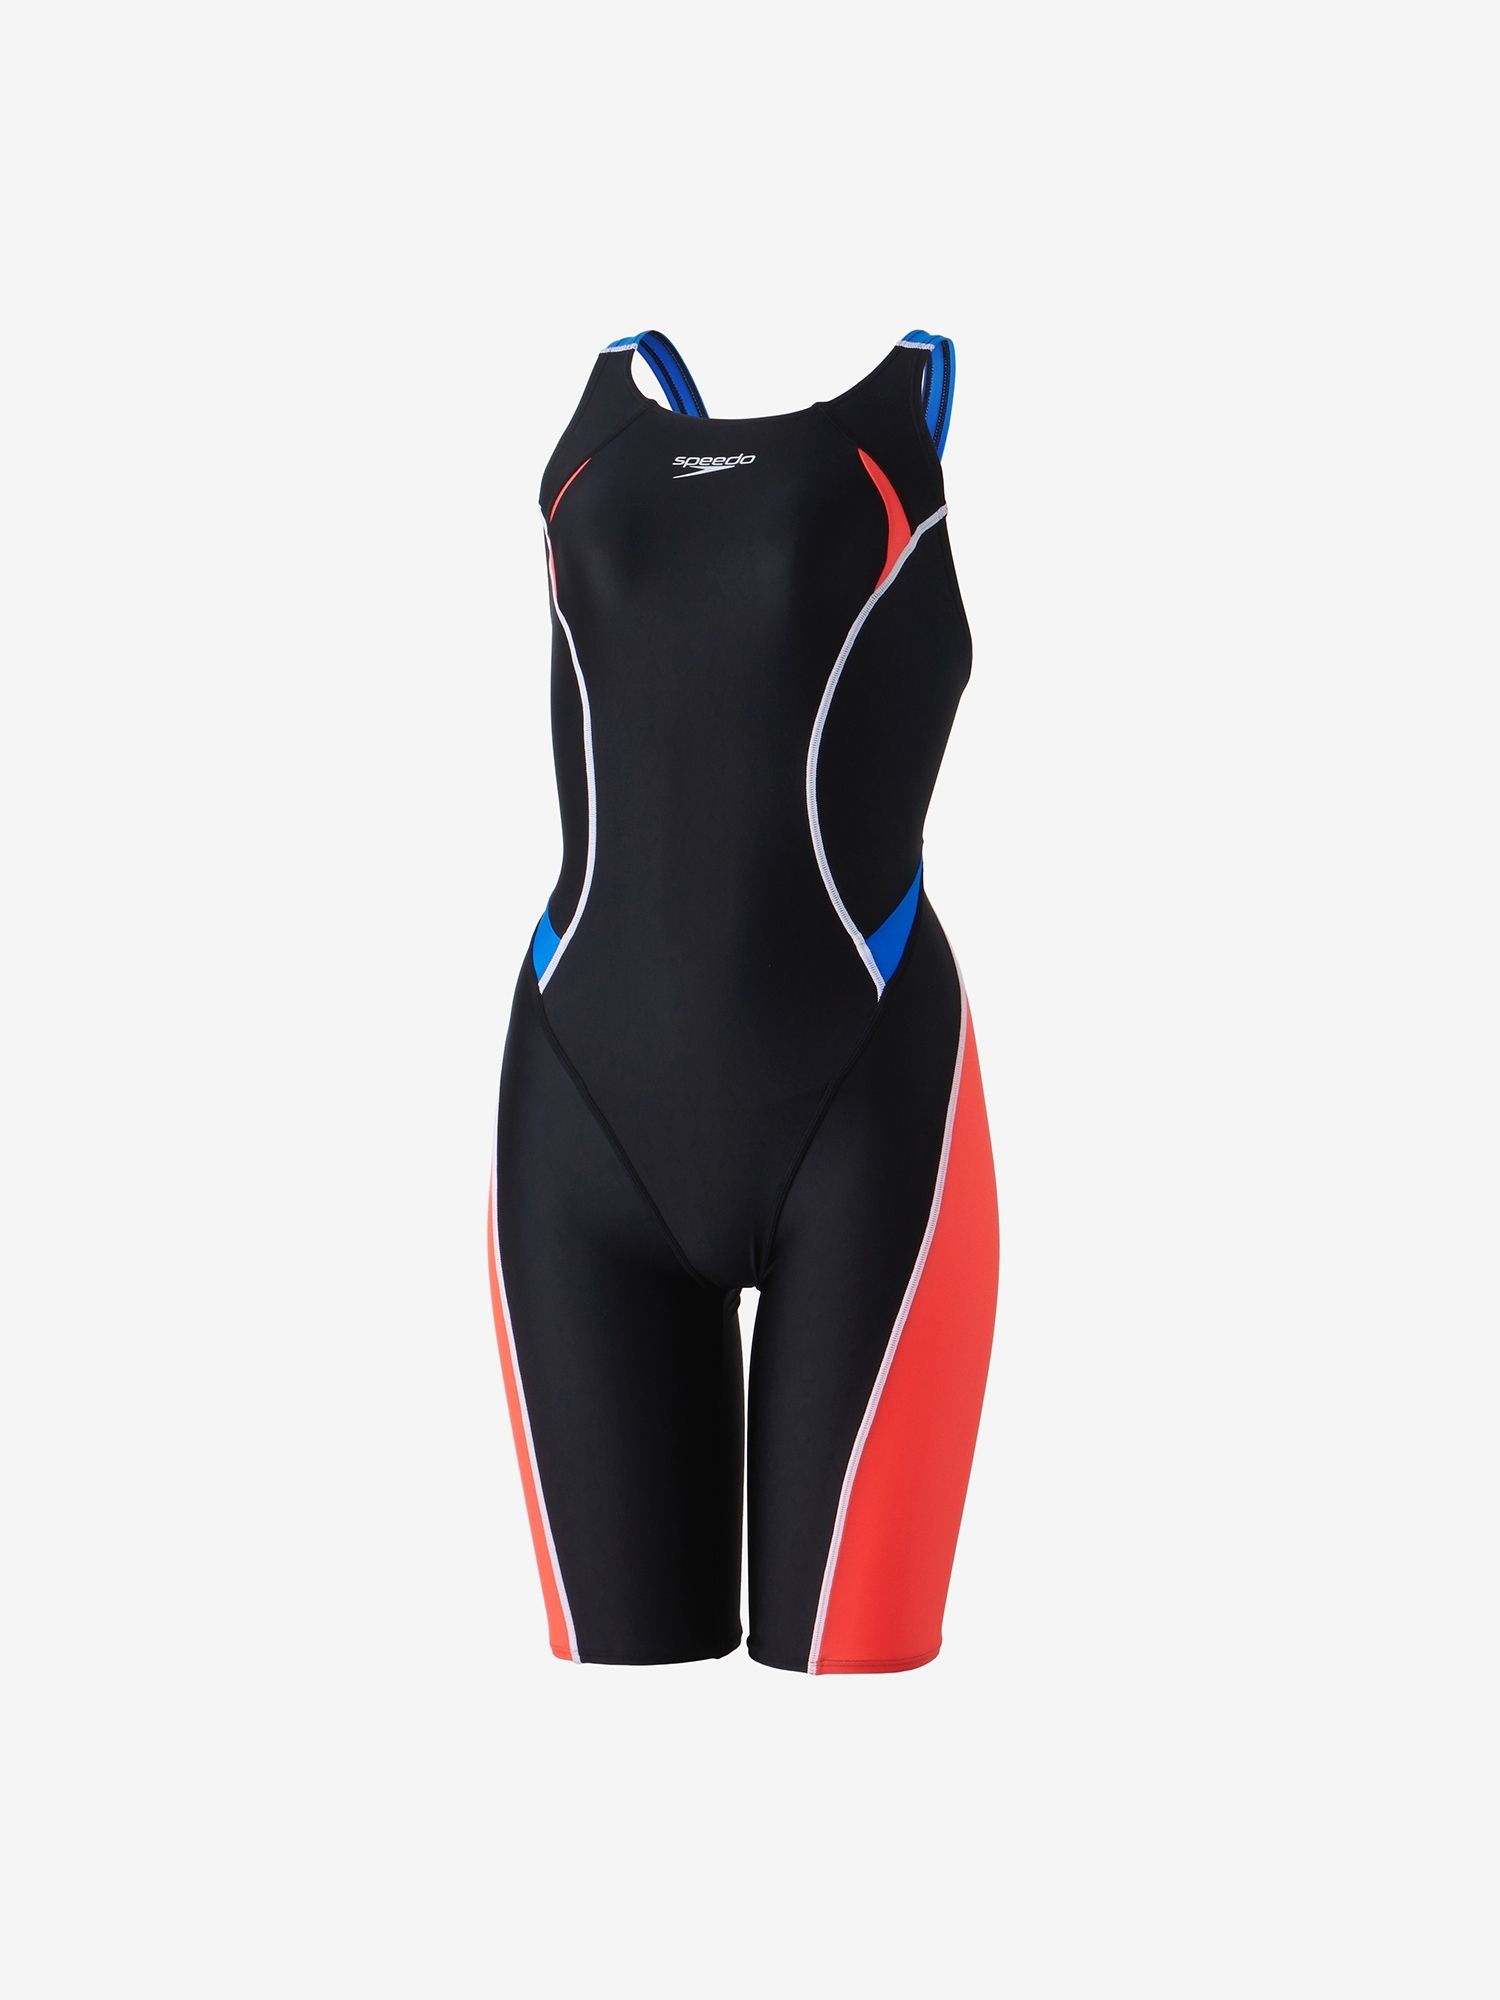 フレックスシグマカイセミオープンバックニースキン(レディース/競泳水着/FINA)（SCW12302F）- speedo公式通販